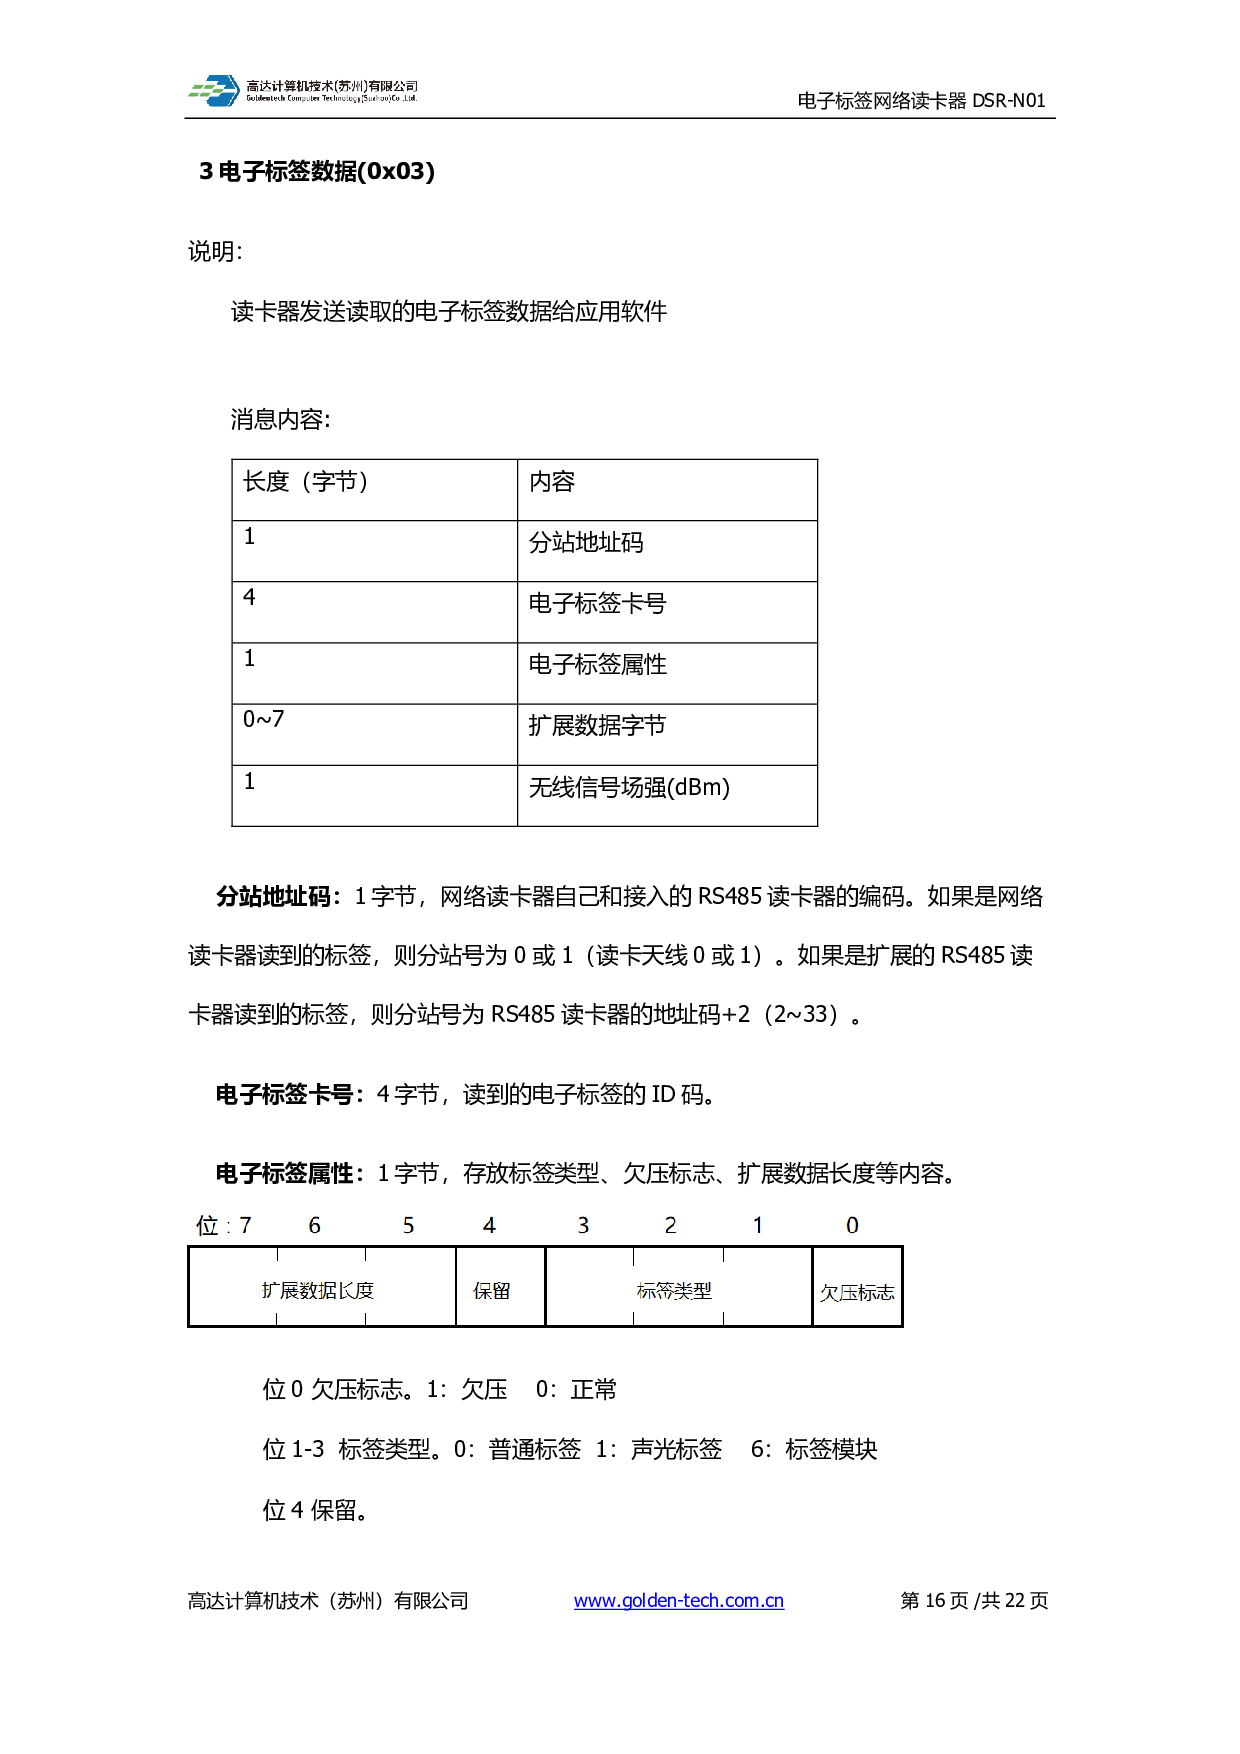 标签定位网络读卡器 DSR-N01图片